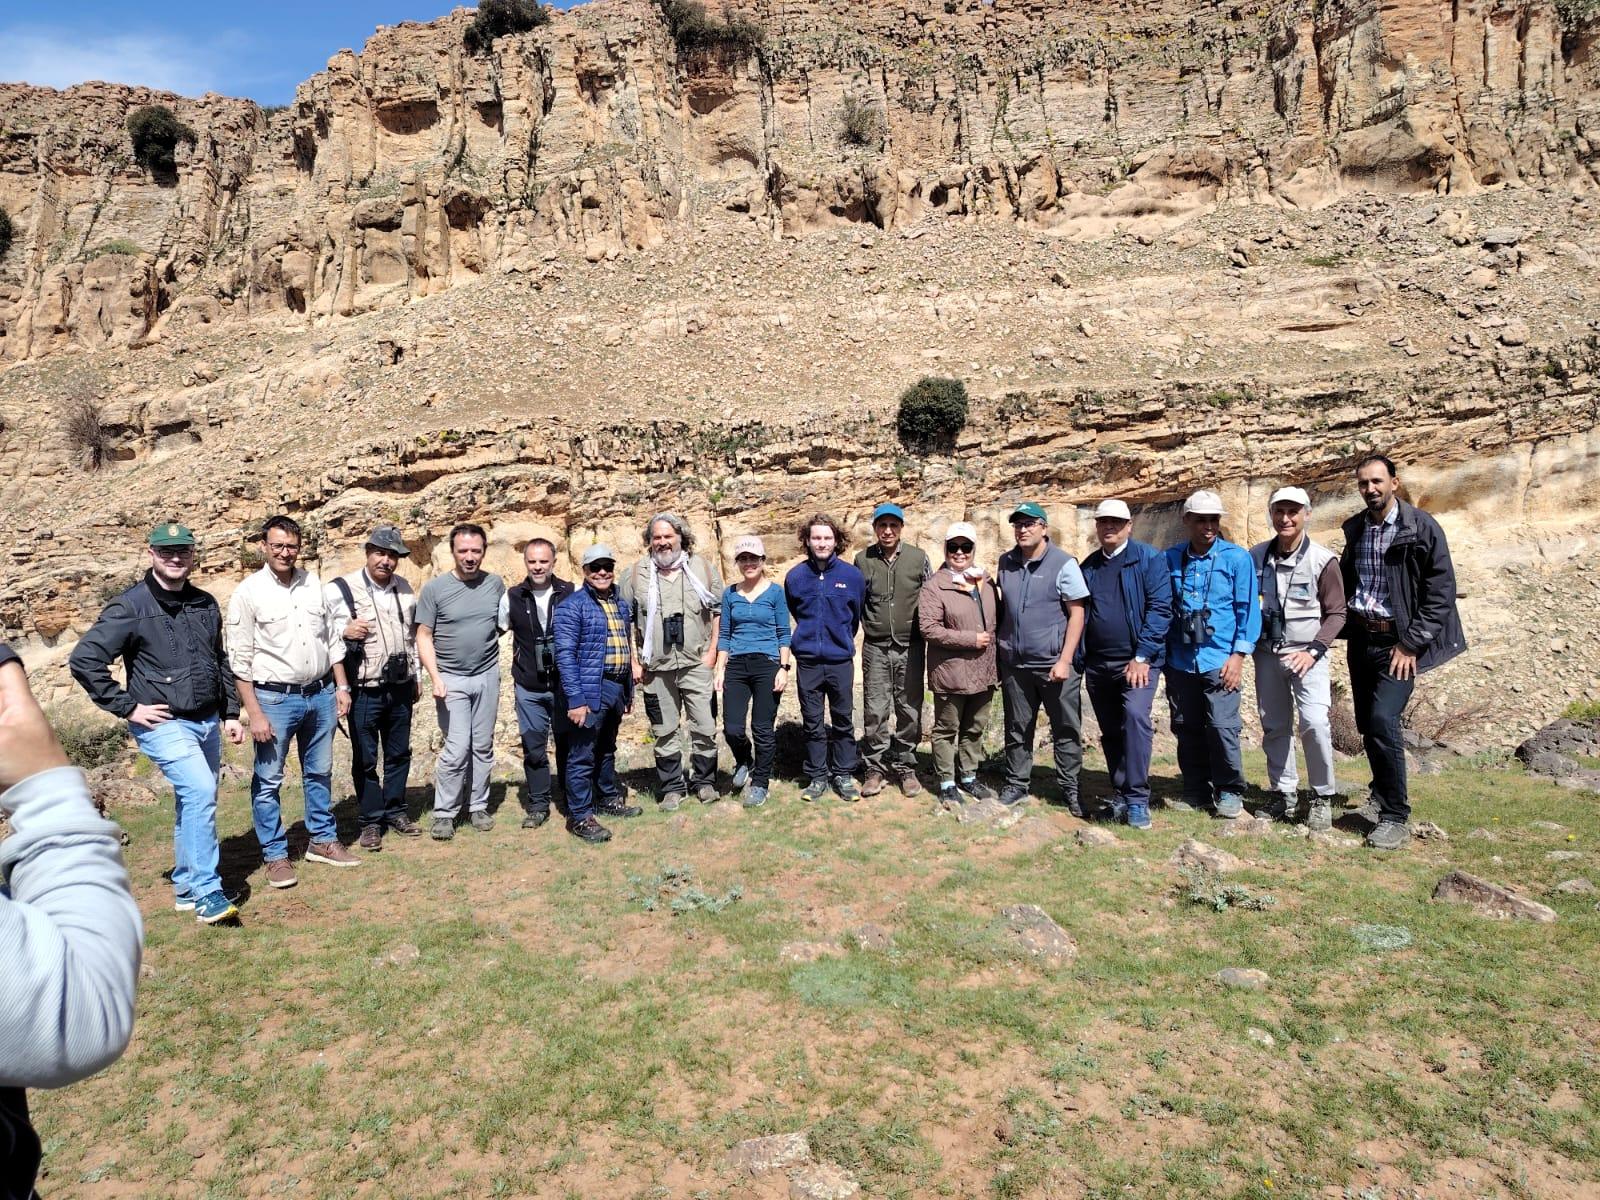 Técnicos del Zoo de Jerez participan con el Gobierno de Marruecos en un estudio para la reintroducción del ibis eremita